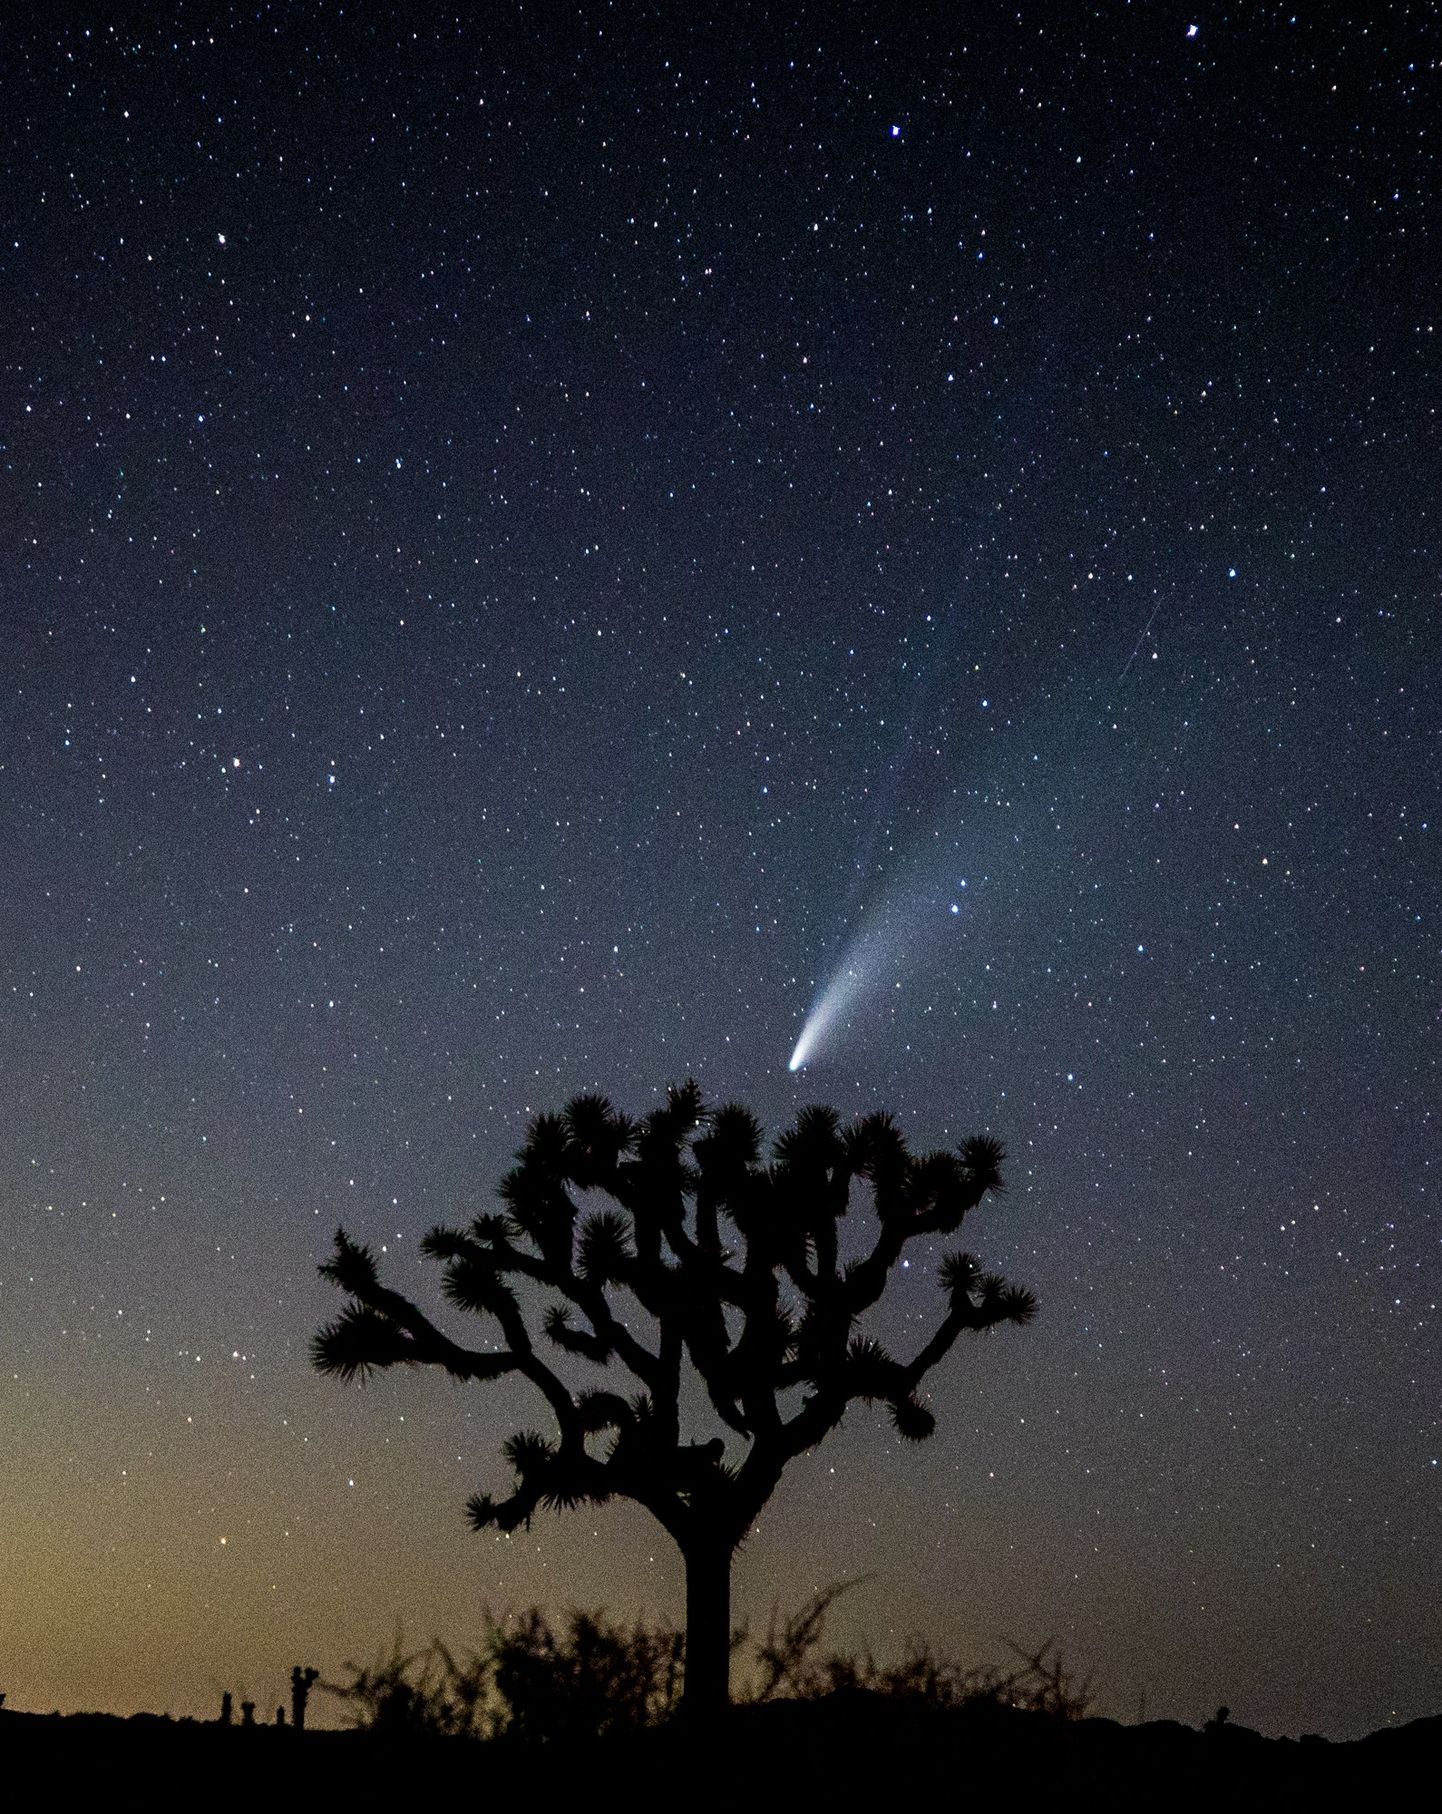 Komeet Neowise, mis kannab ka tähistust C2020 F3, nähtuna 19. juulil 2020 USAs Californias